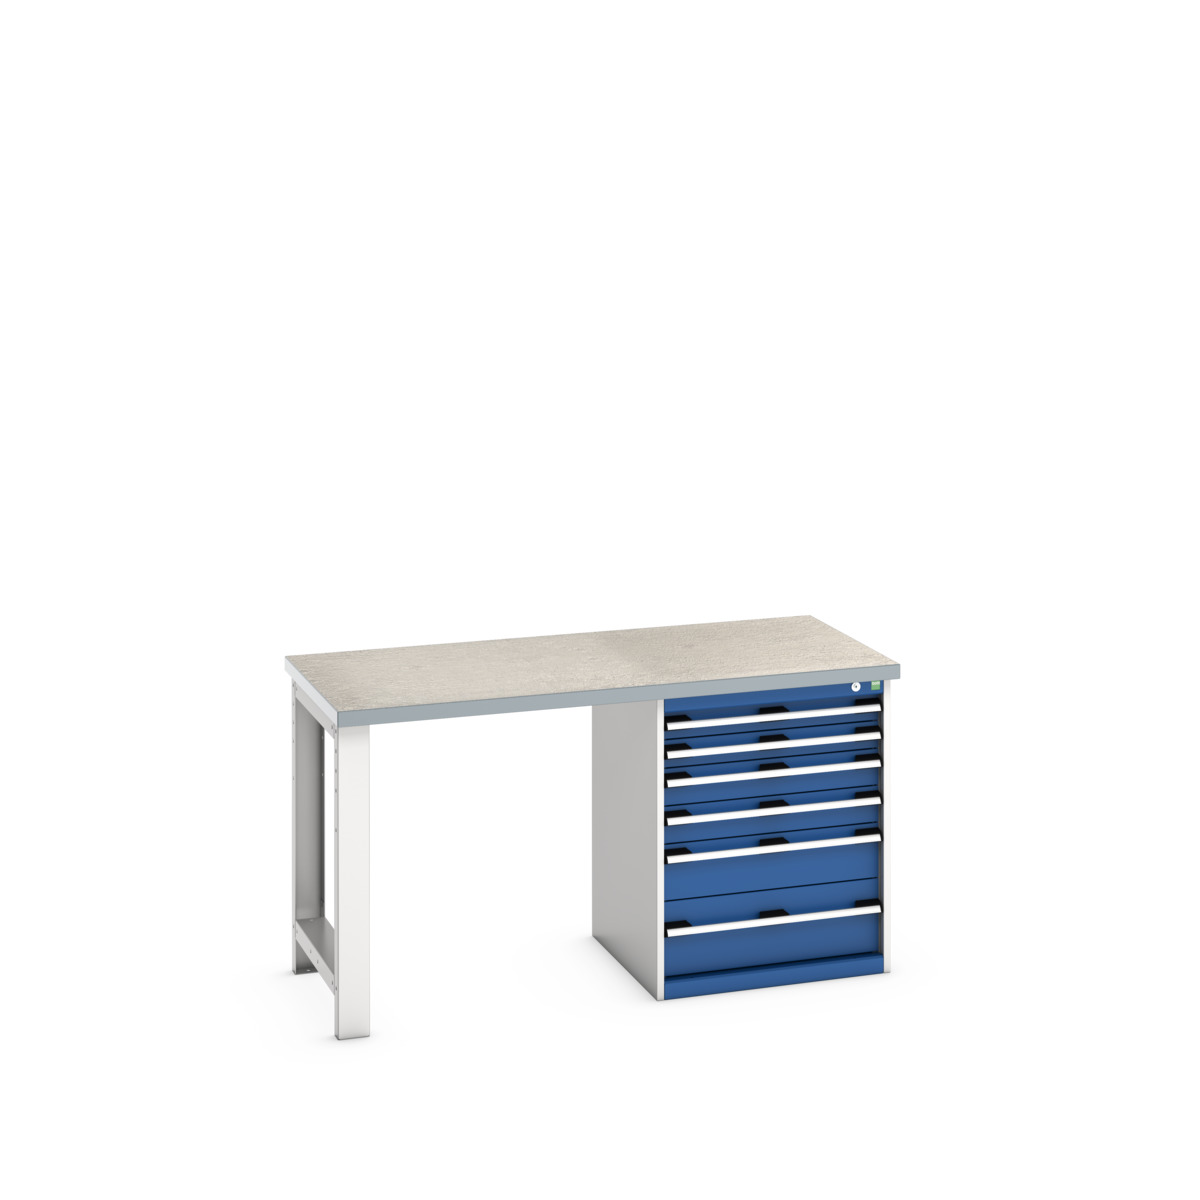 41003141.11V - cubio pedestal bench (lino)